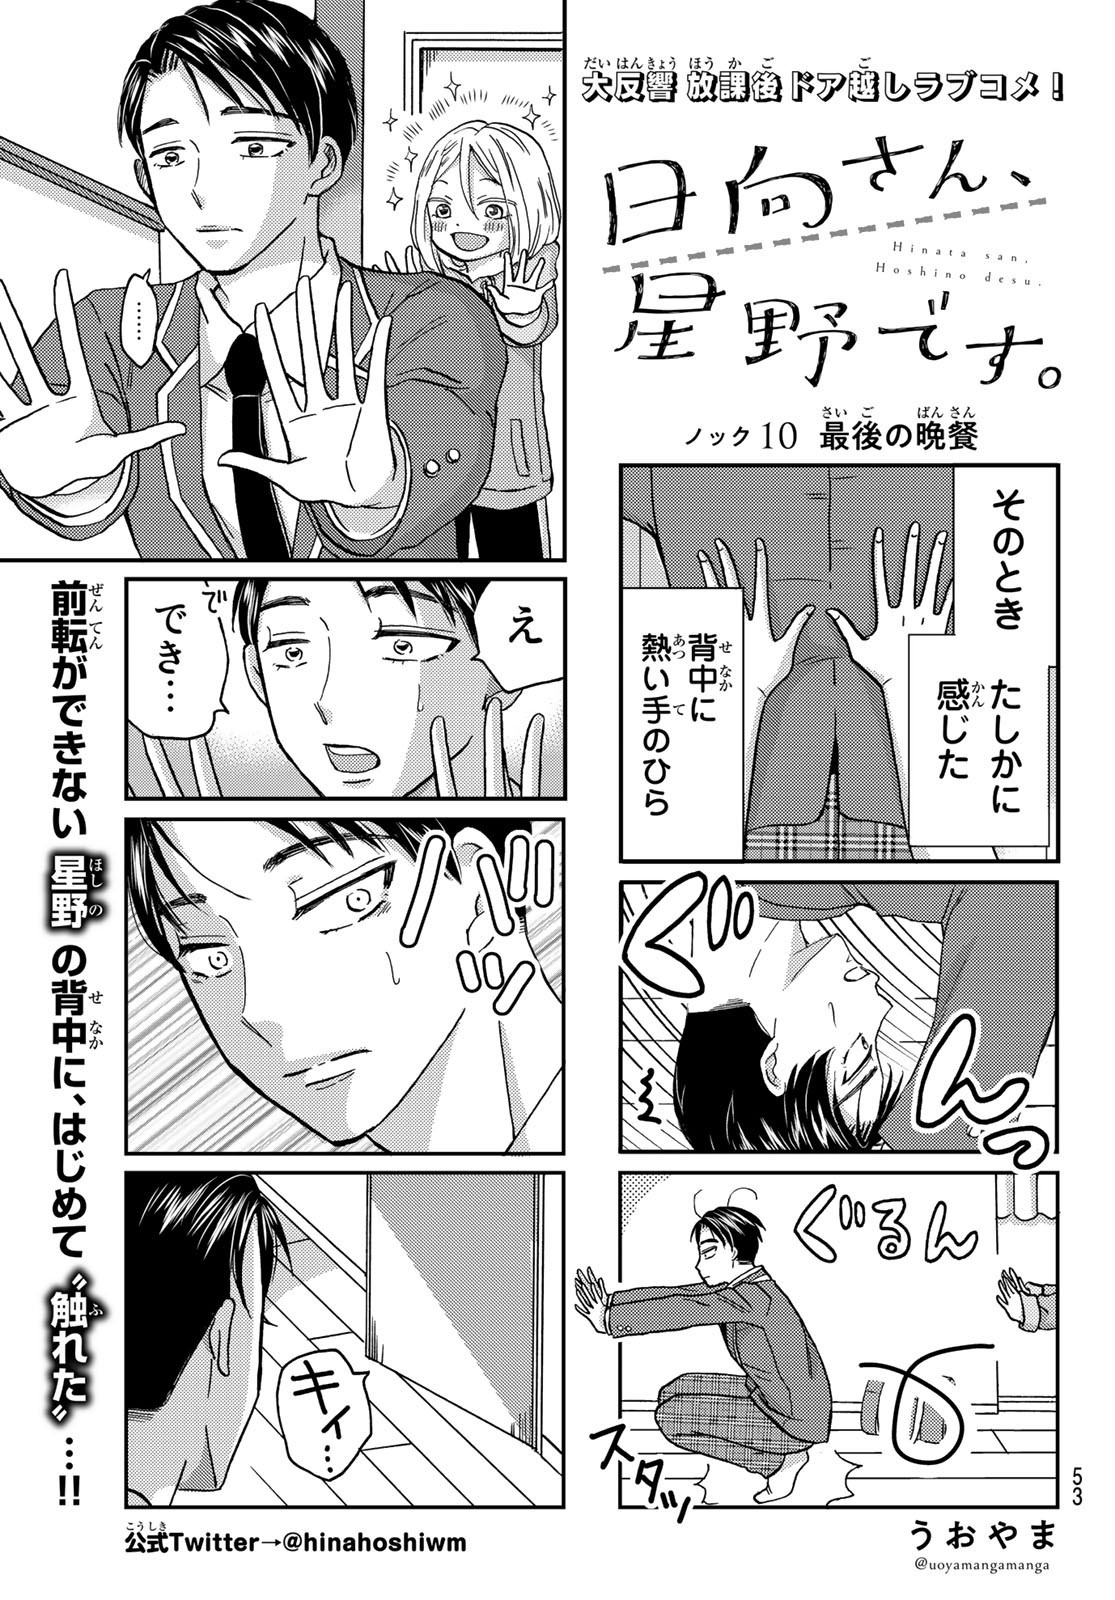 Hinata-san, Hoshino desu. - Chapter 010 - Page 1